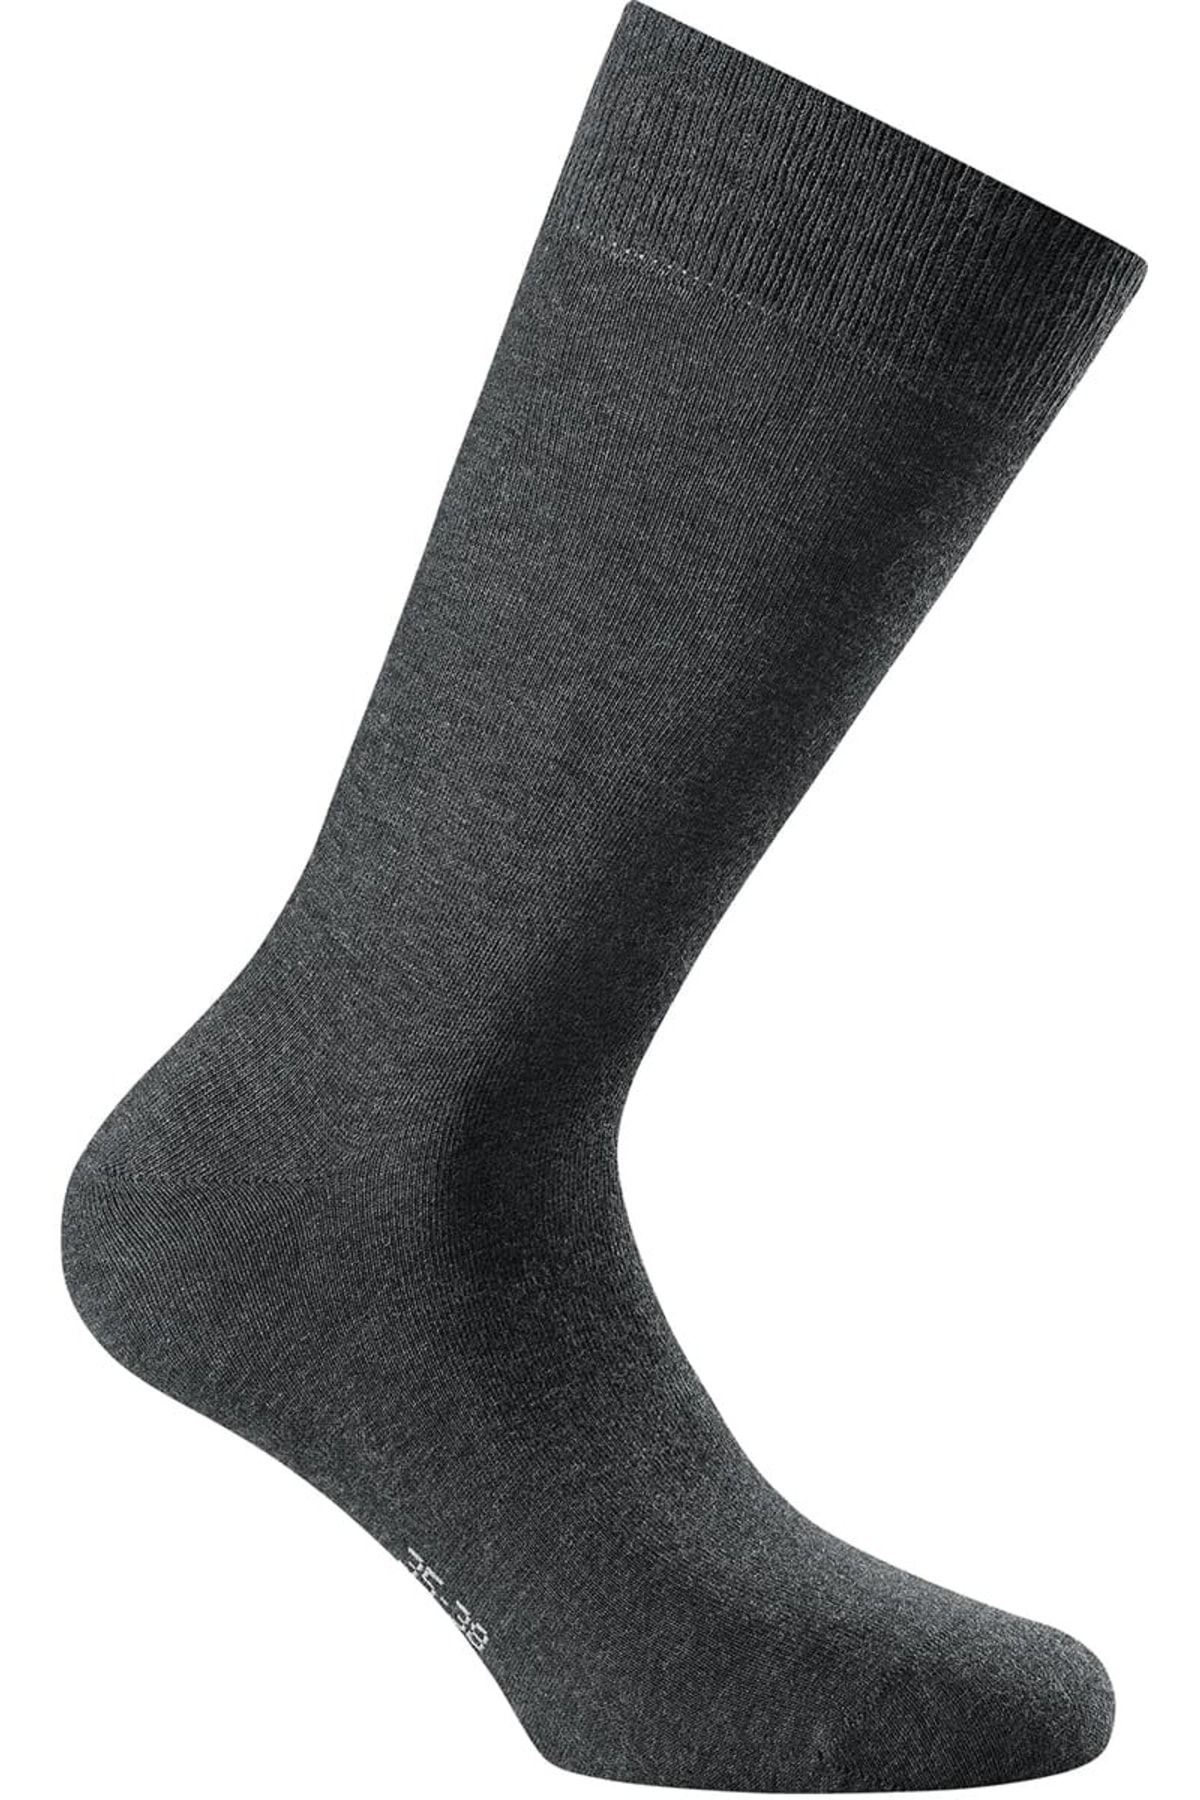 Socken, Trendyol - Unisex Cotton socks Pack Basic, Rohner - II, advanced Rohner einfarbig Kurzsocken, 3er